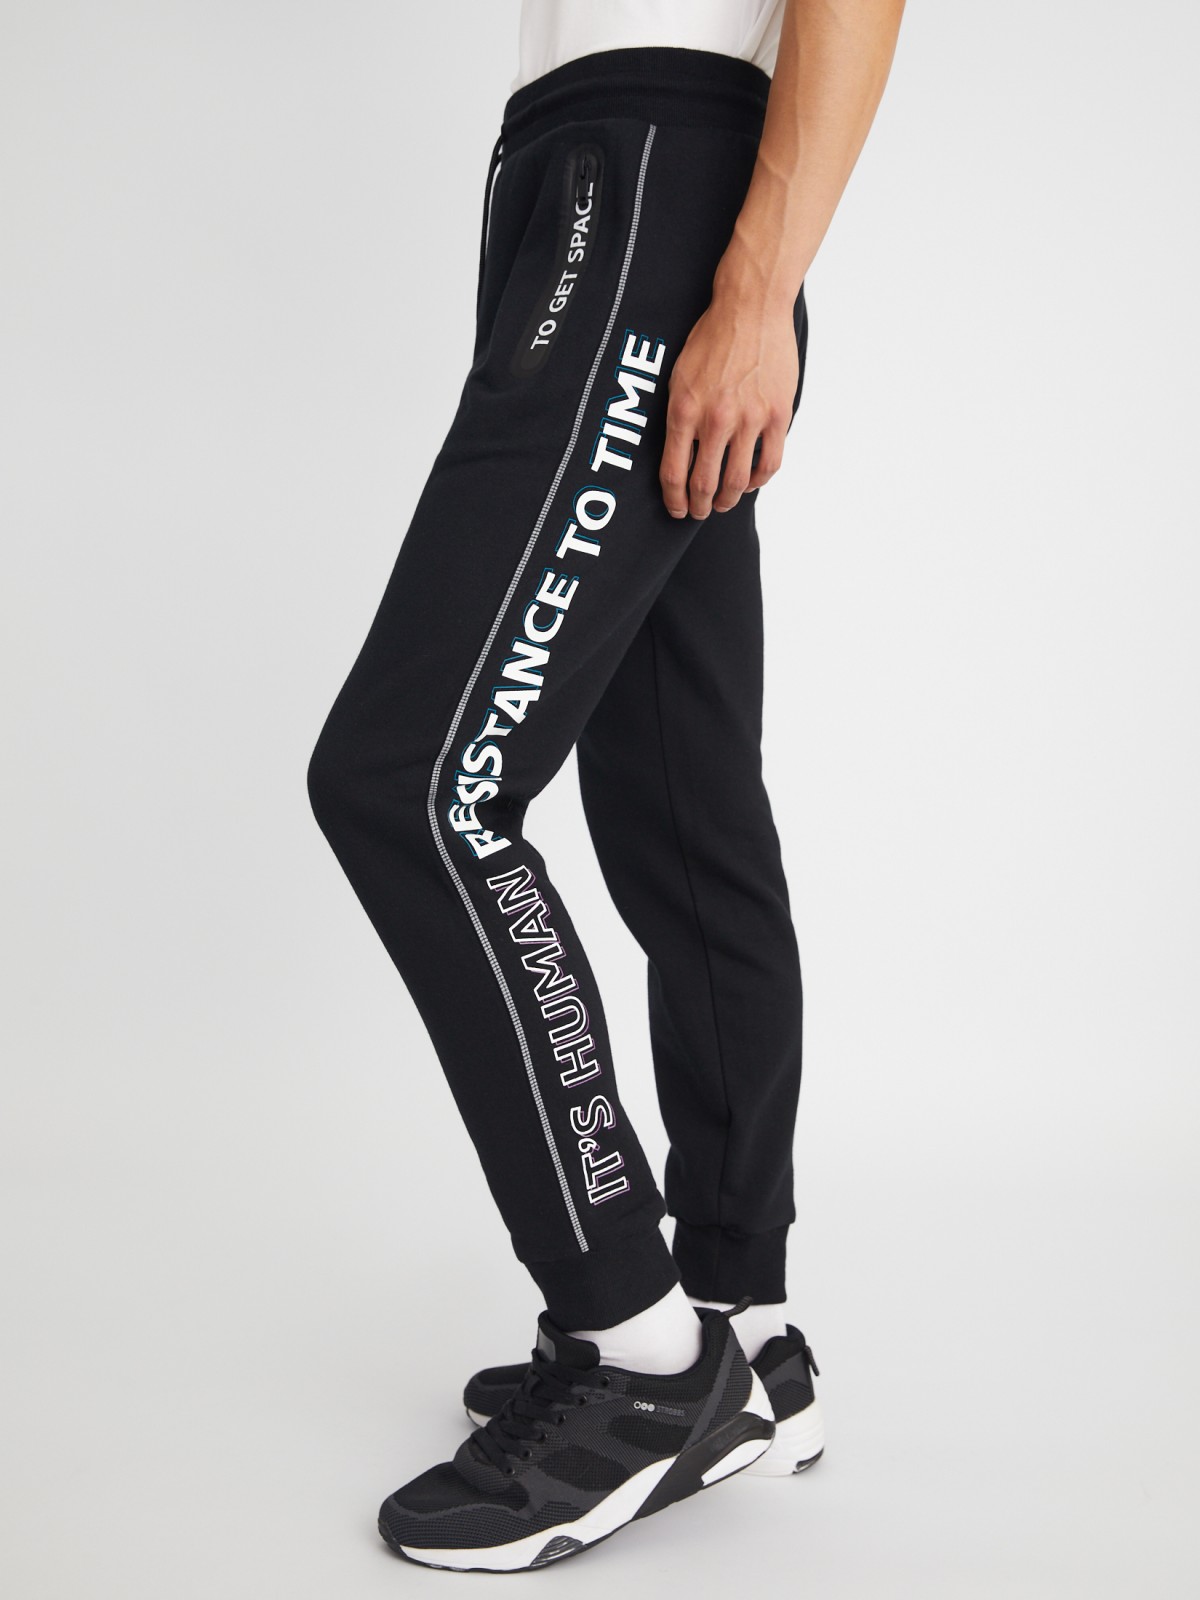 Утеплённые трикотажные брюки-джоггеры в спортивном стиле с принтом zolla 213337679051, цвет черный, размер S - фото 4